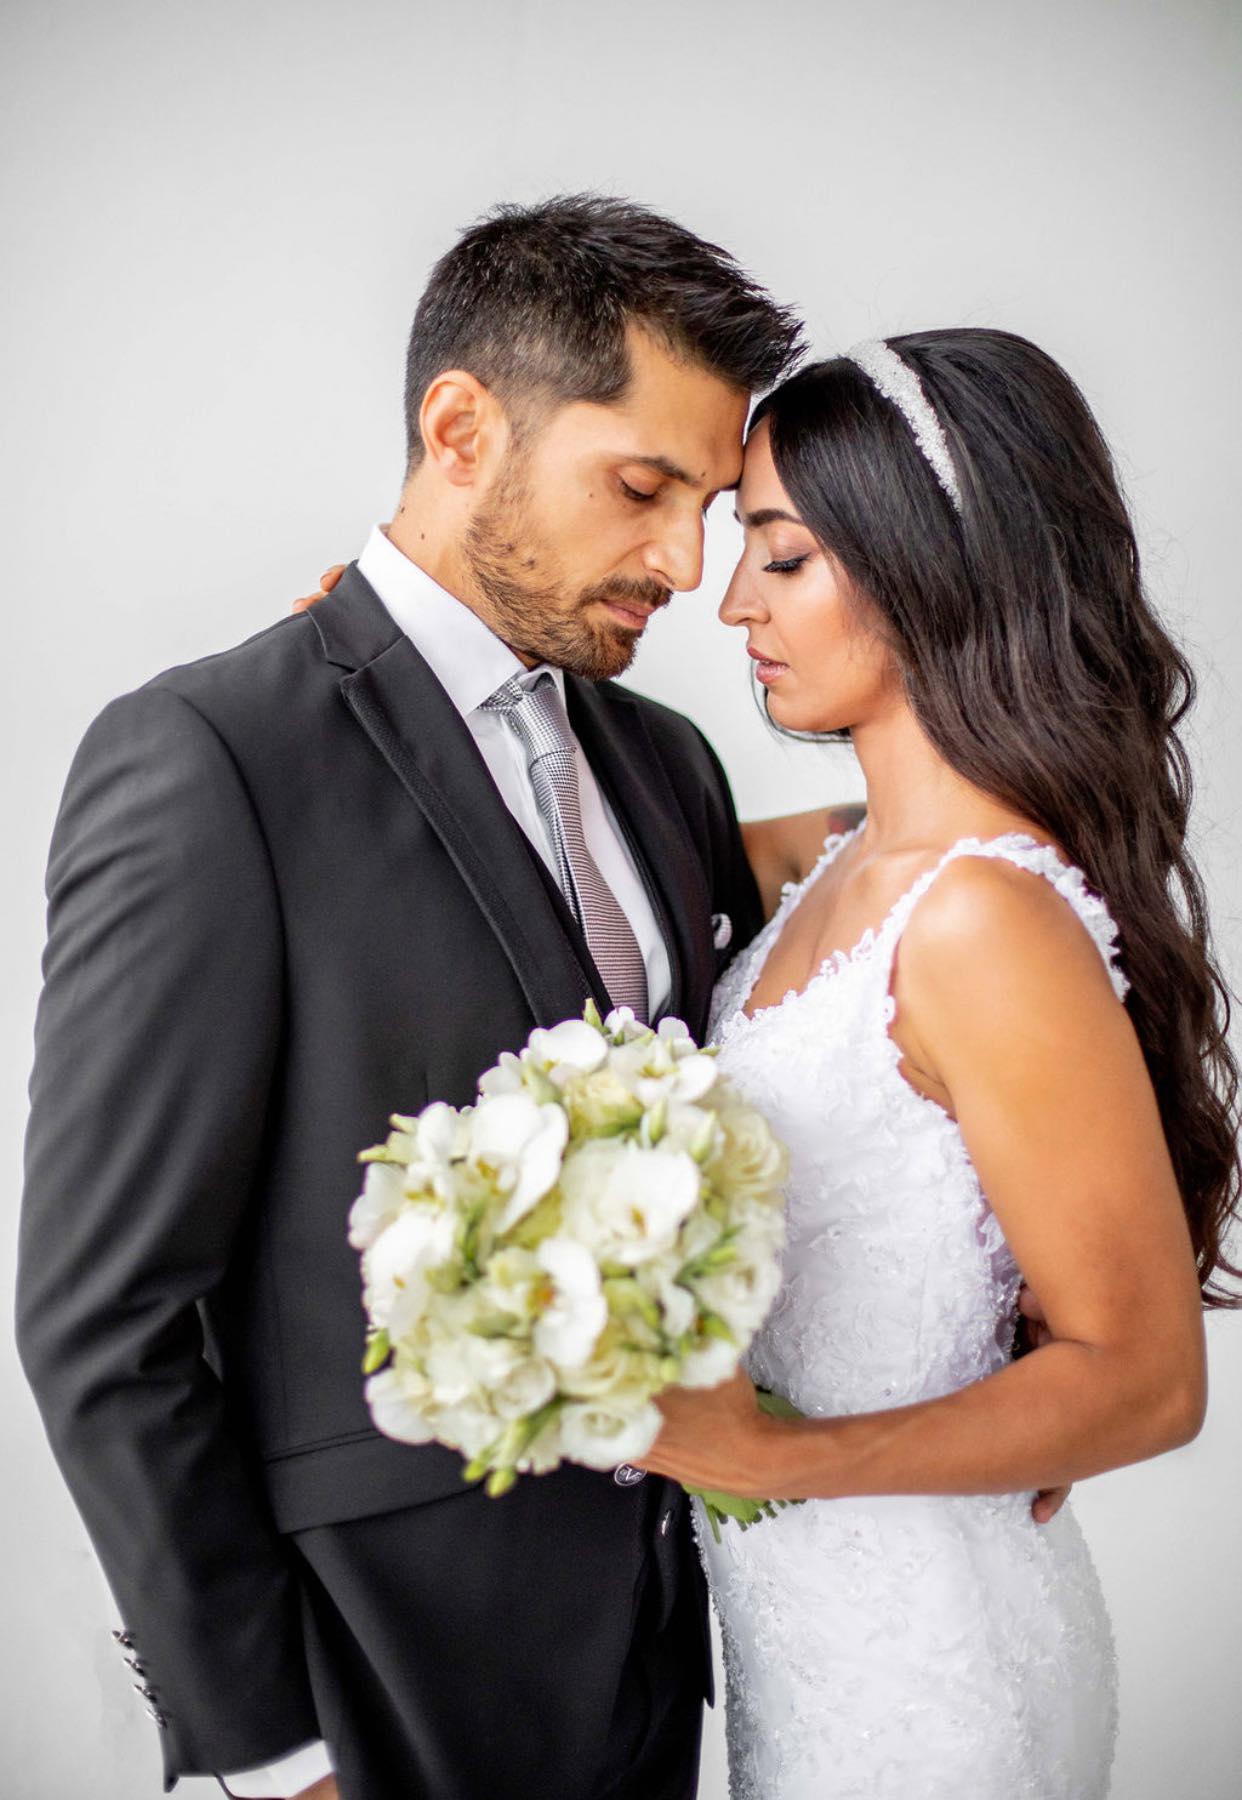 A Fairytale Wedding in Rhodes - Love Stories